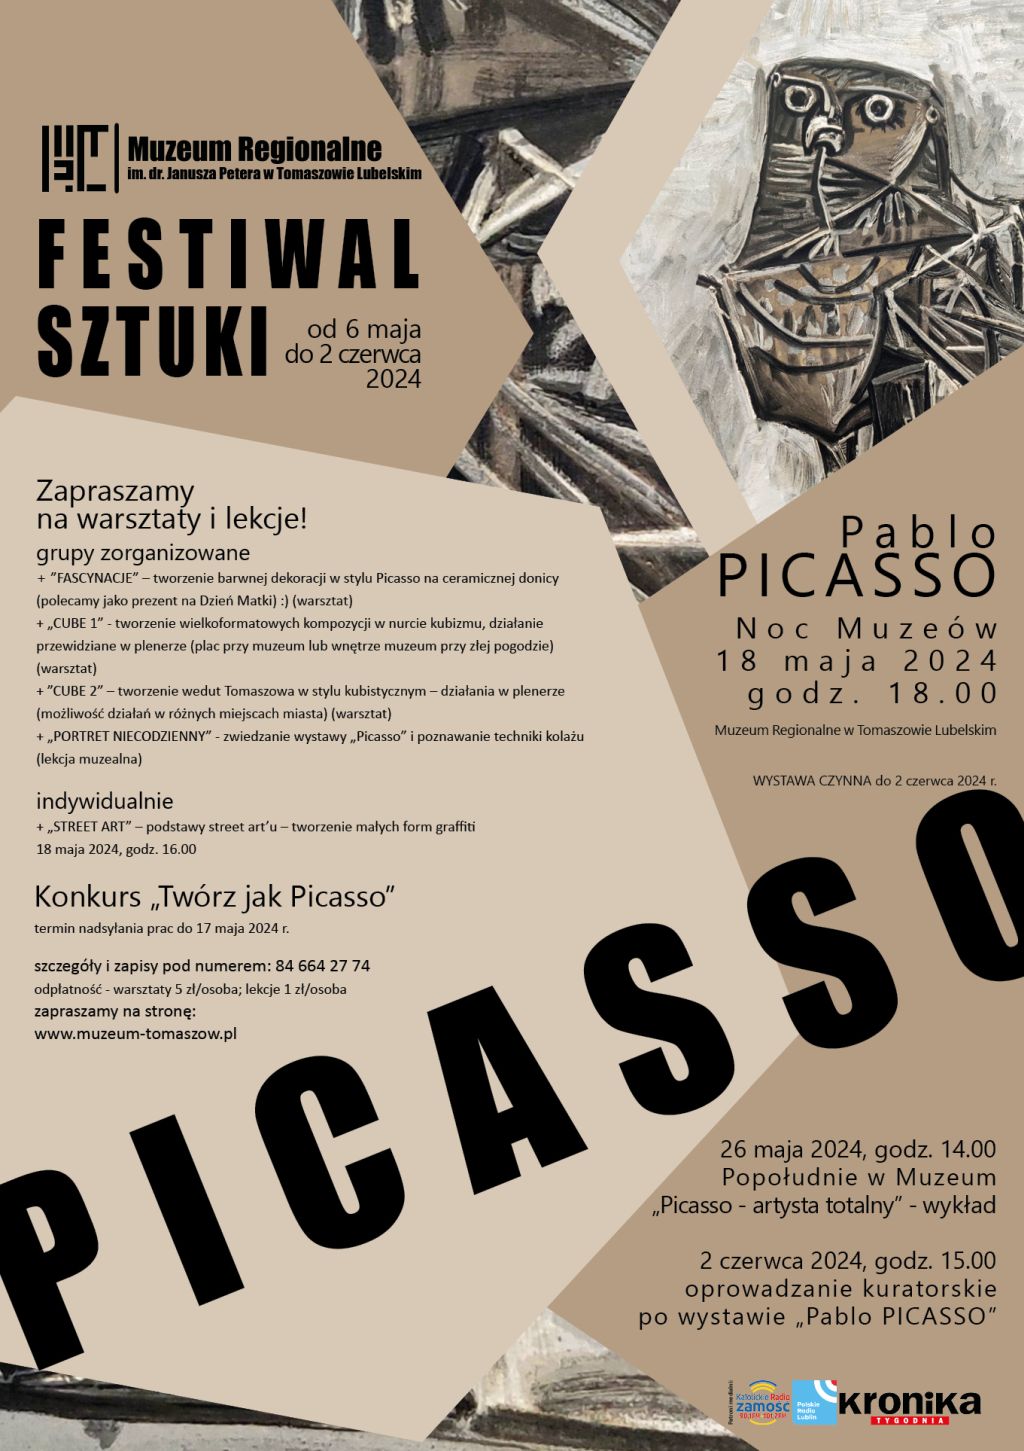 Festiwal Sztuki – Pablo Picasso